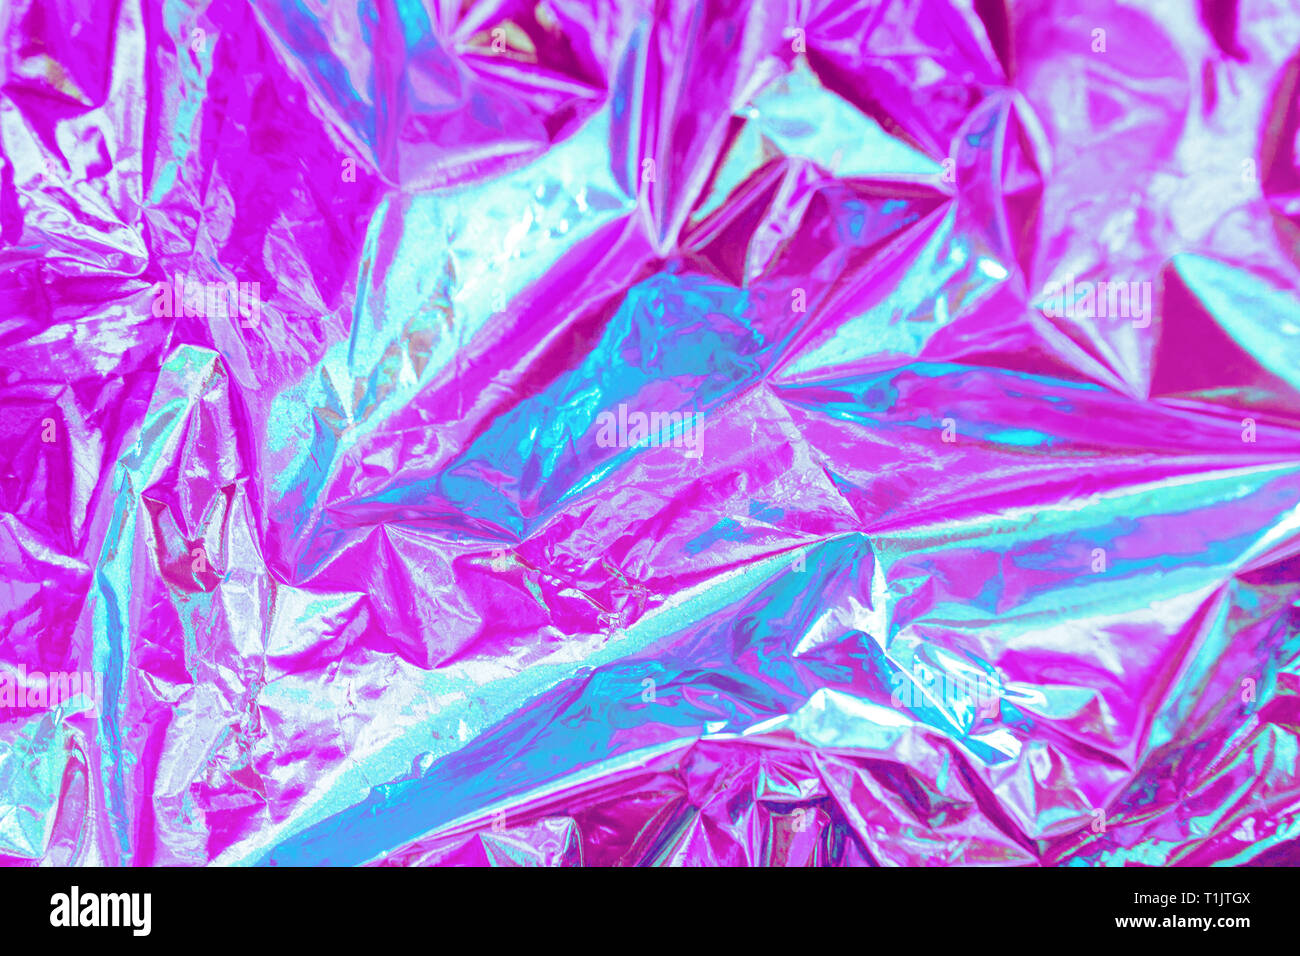 Abstract moderno luminoso colorato sfondo olografica in 80s stile. Synthwave. Vaporwave stile. Retrowave, retro del futurismo, webpunk Foto Stock